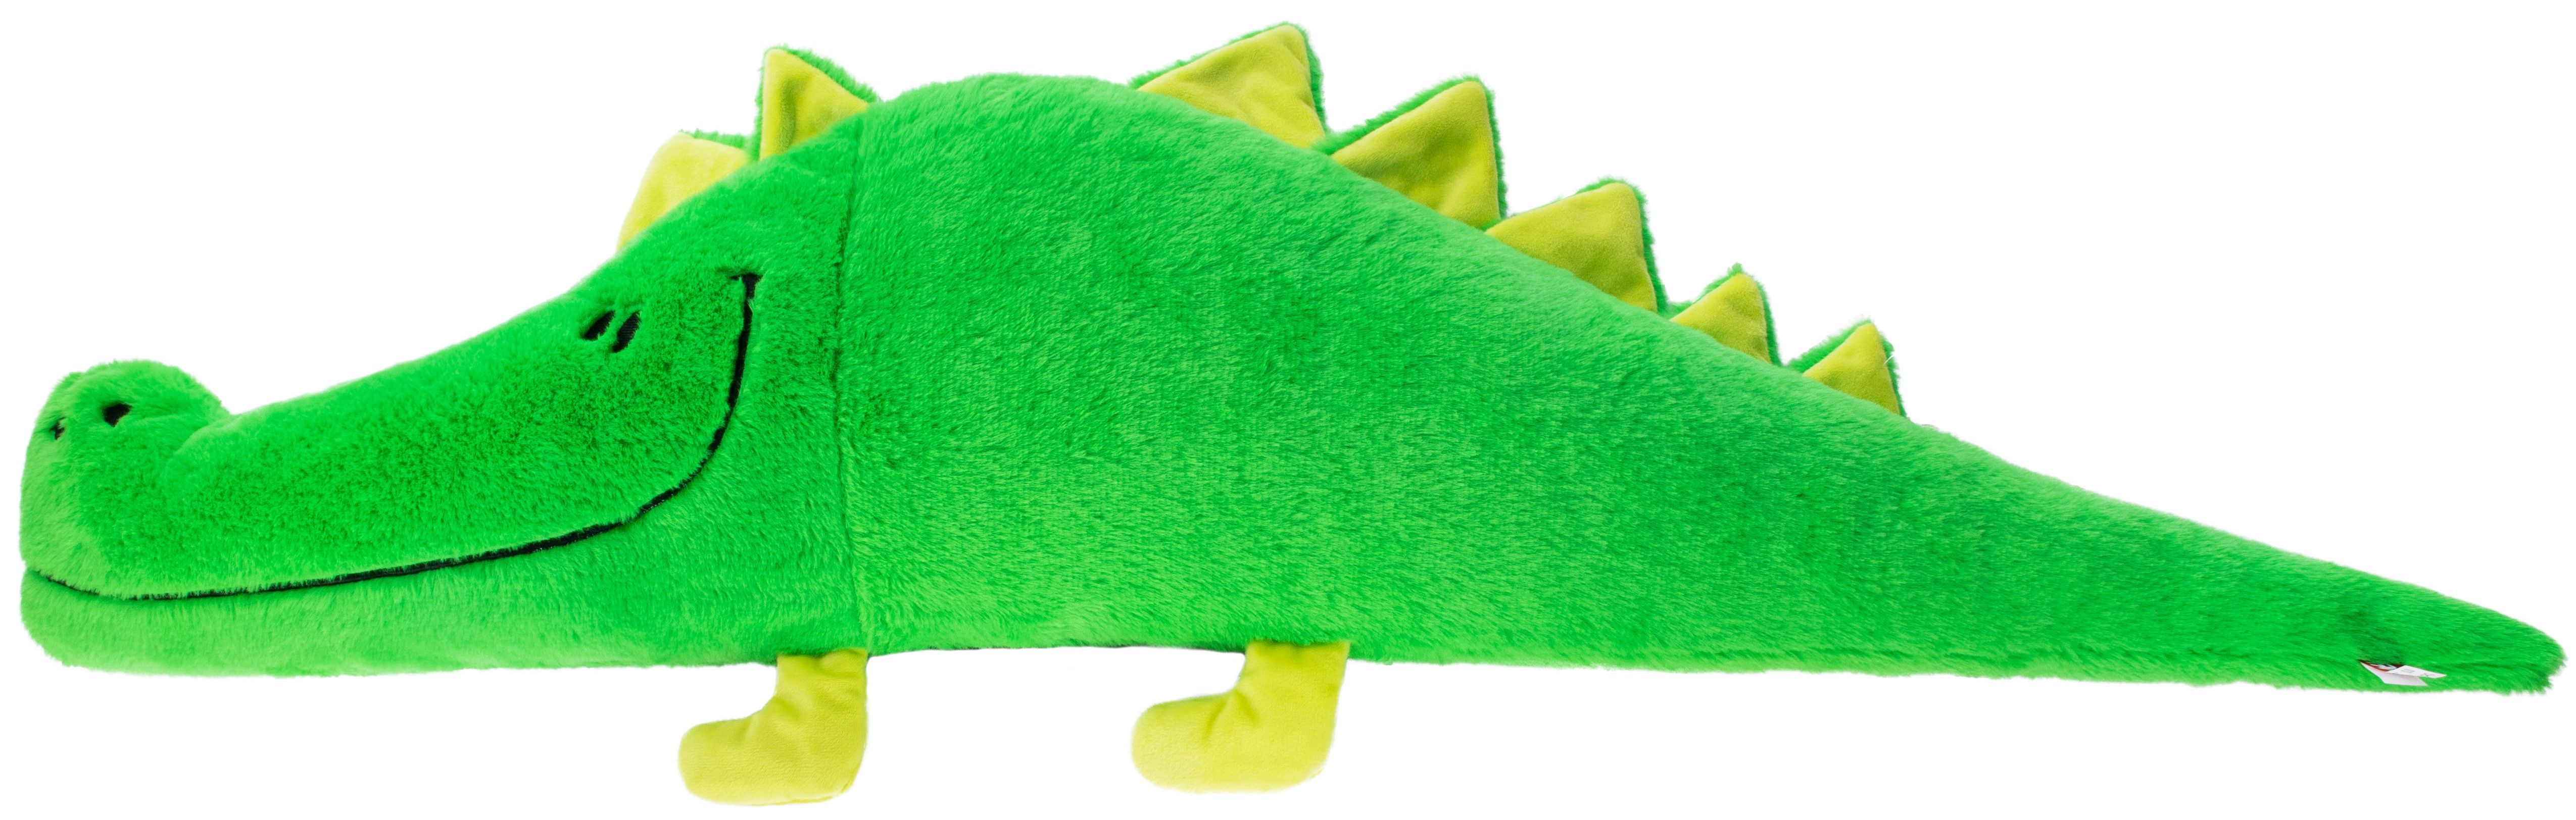 Мягкая игрушка Крокодил (99 см)